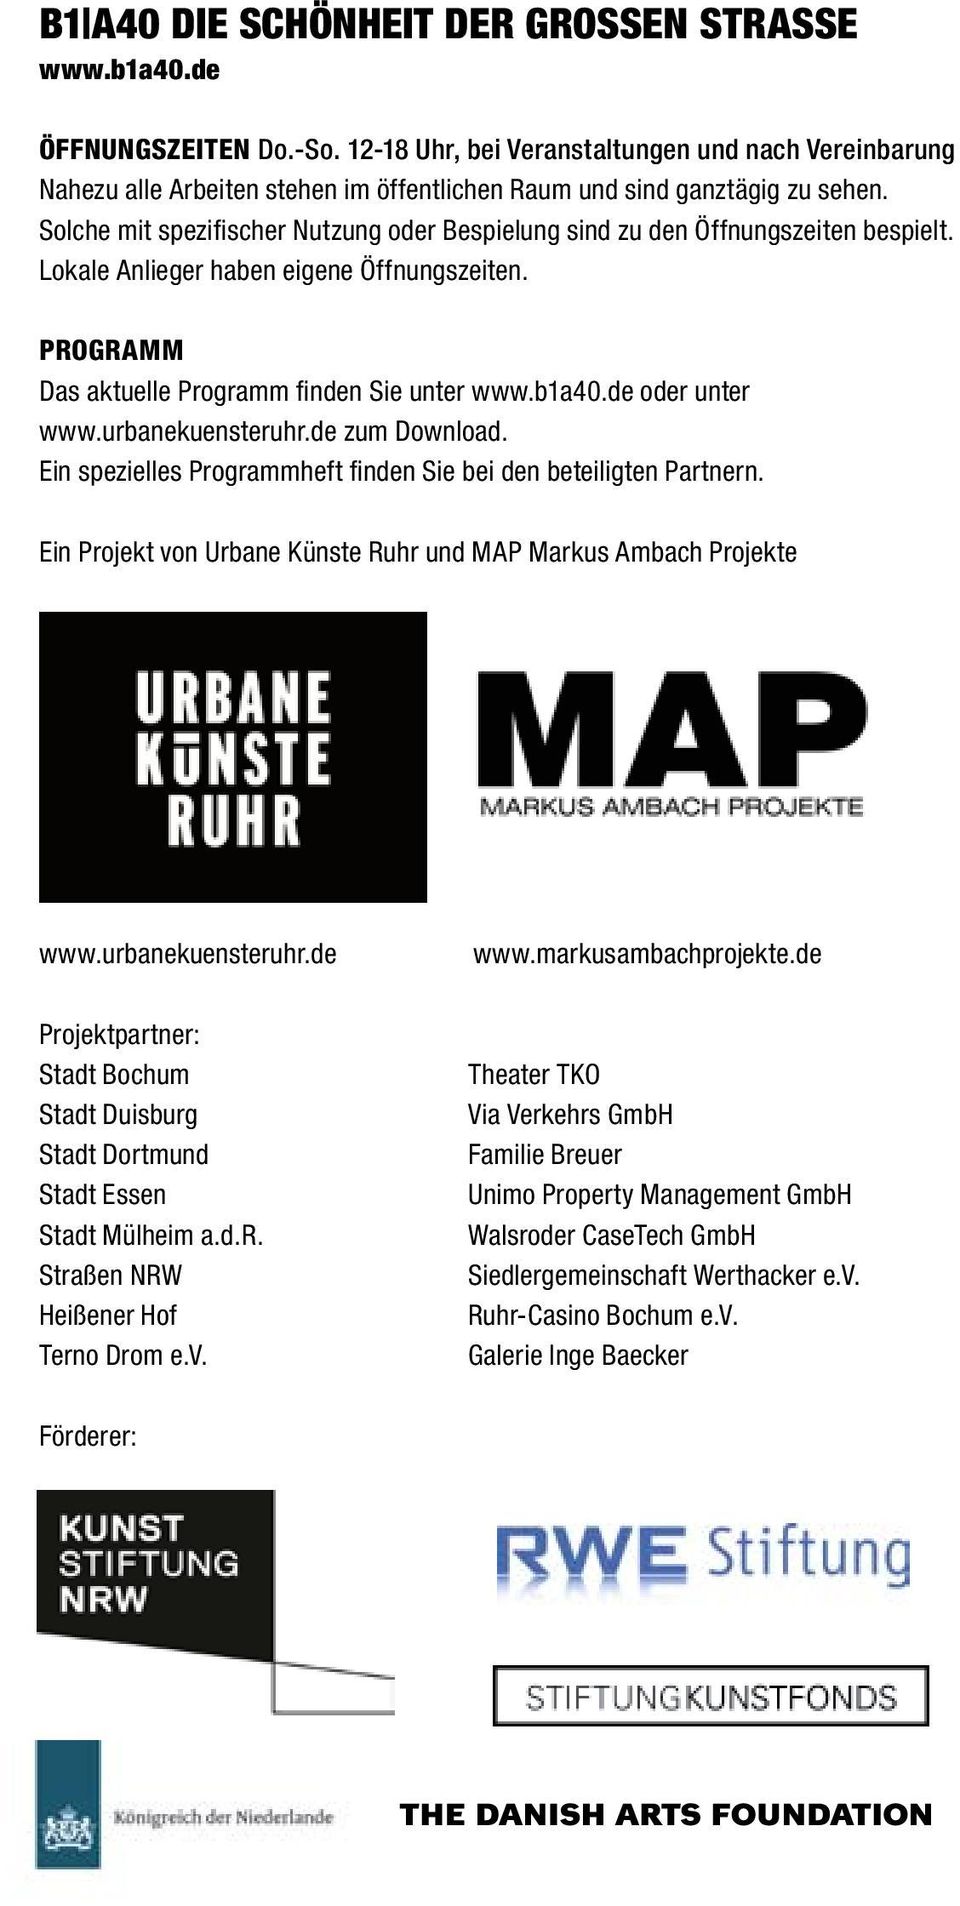 de oder unter www.urbanekuensteruhr.de zum Download. Ein spezielles Programmheft finden Sie bei den beteiligten Partnern. Ein Projekt von Urbane Künste Ruhr und MAP Markus Ambach Projekte www.